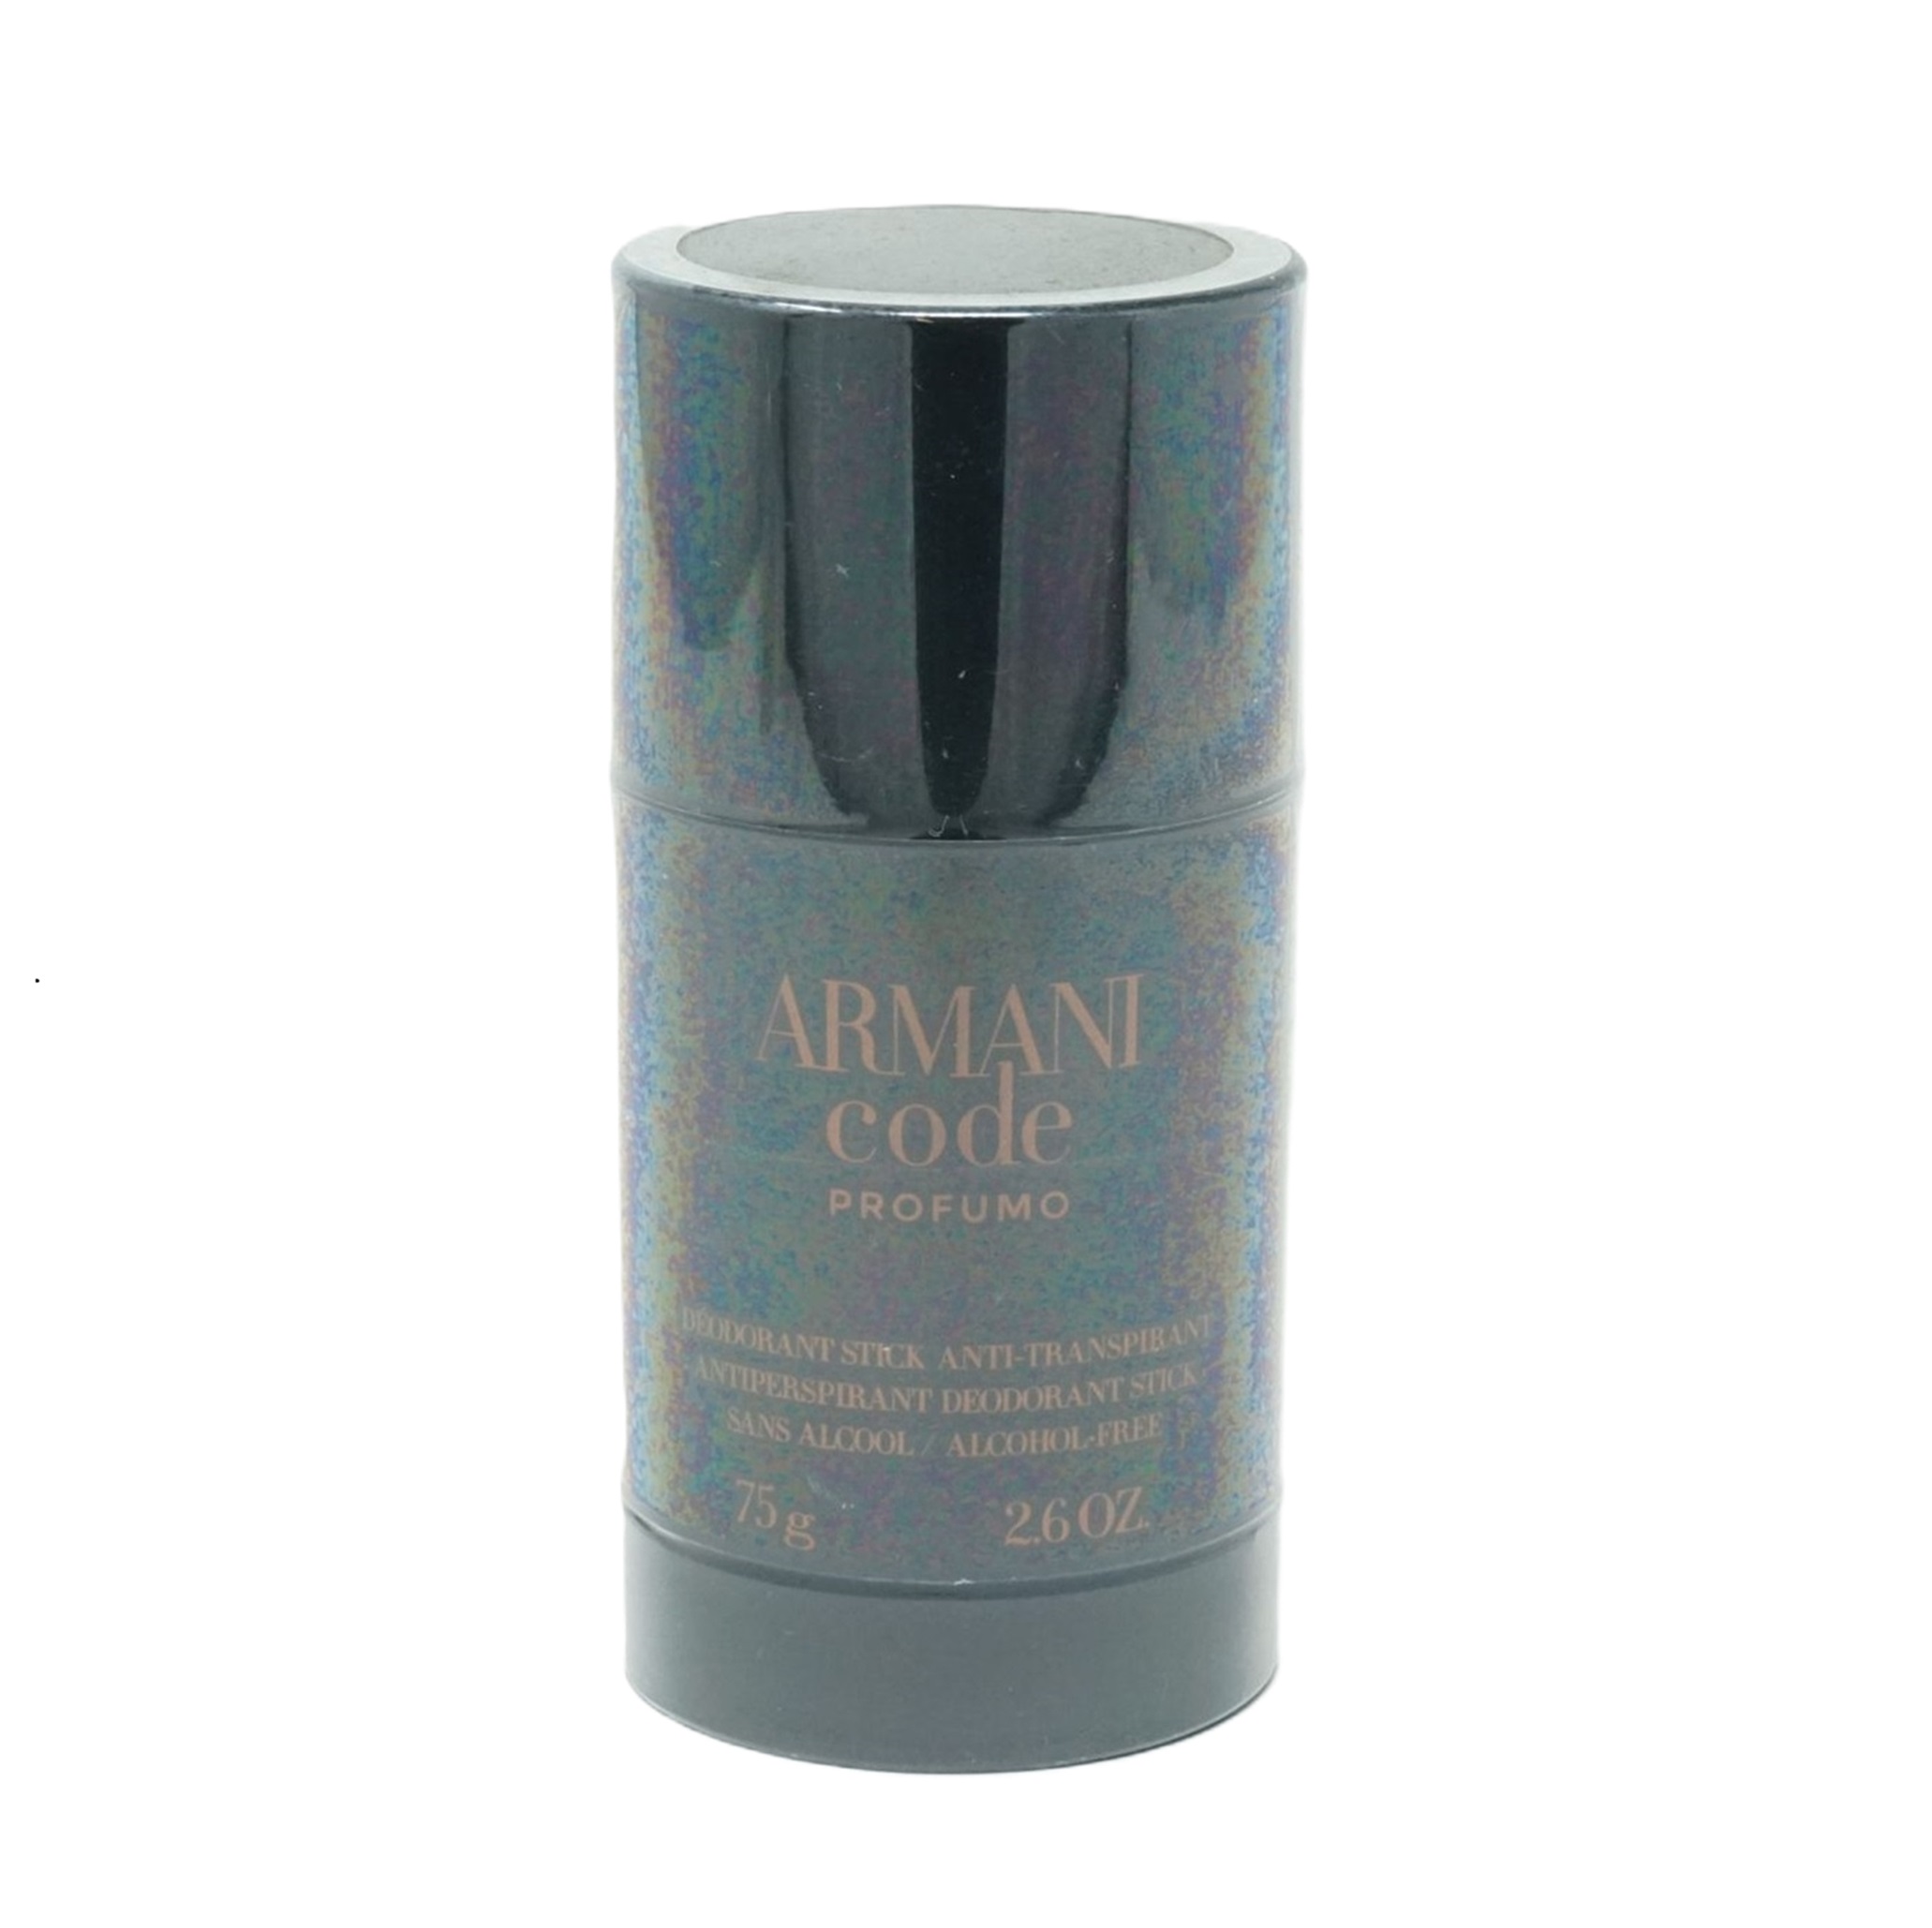 Armani Code Profumo Deodorant Stick 75g